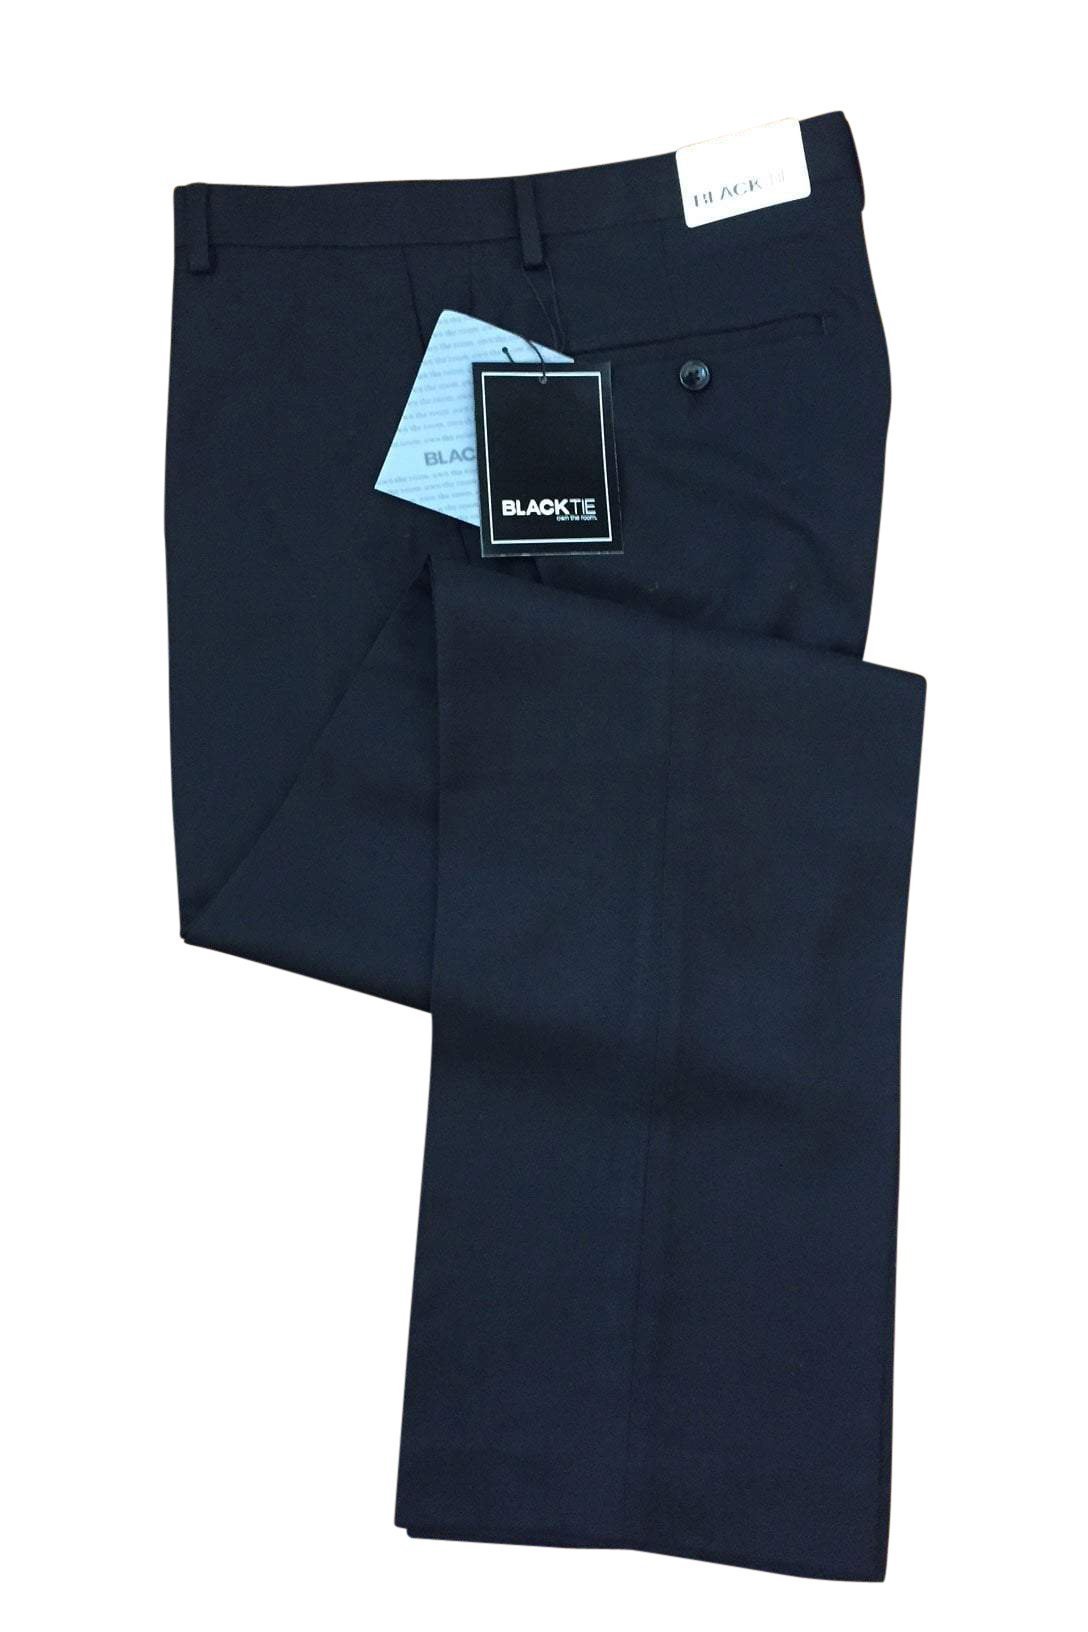 Bradley Black Luxury Wool Blend Suit Pants - 28 / 30 / 